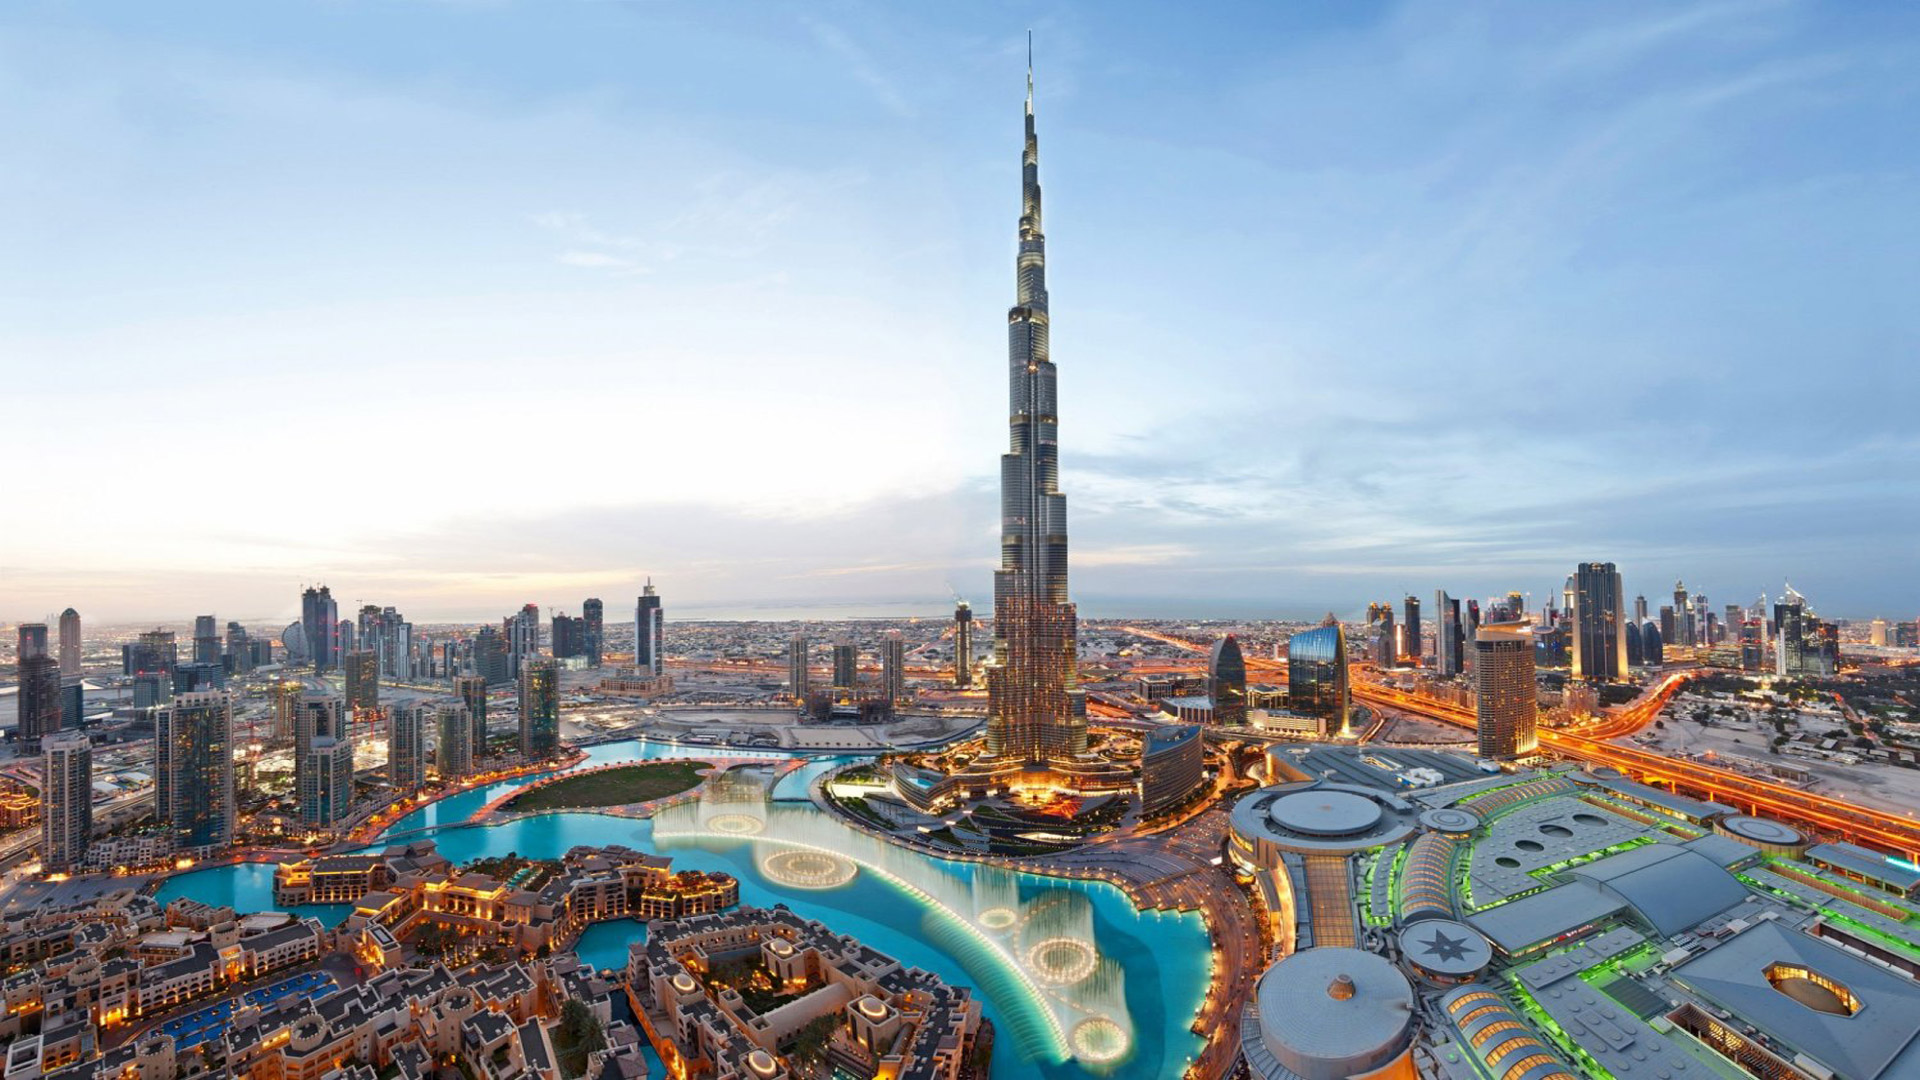 W RESIDENCES DUBAI – DOWNTOWN by Dar Al Arkan in Downtown Dubai (Downtown Burj Dubai), Dubai, UAE - 9